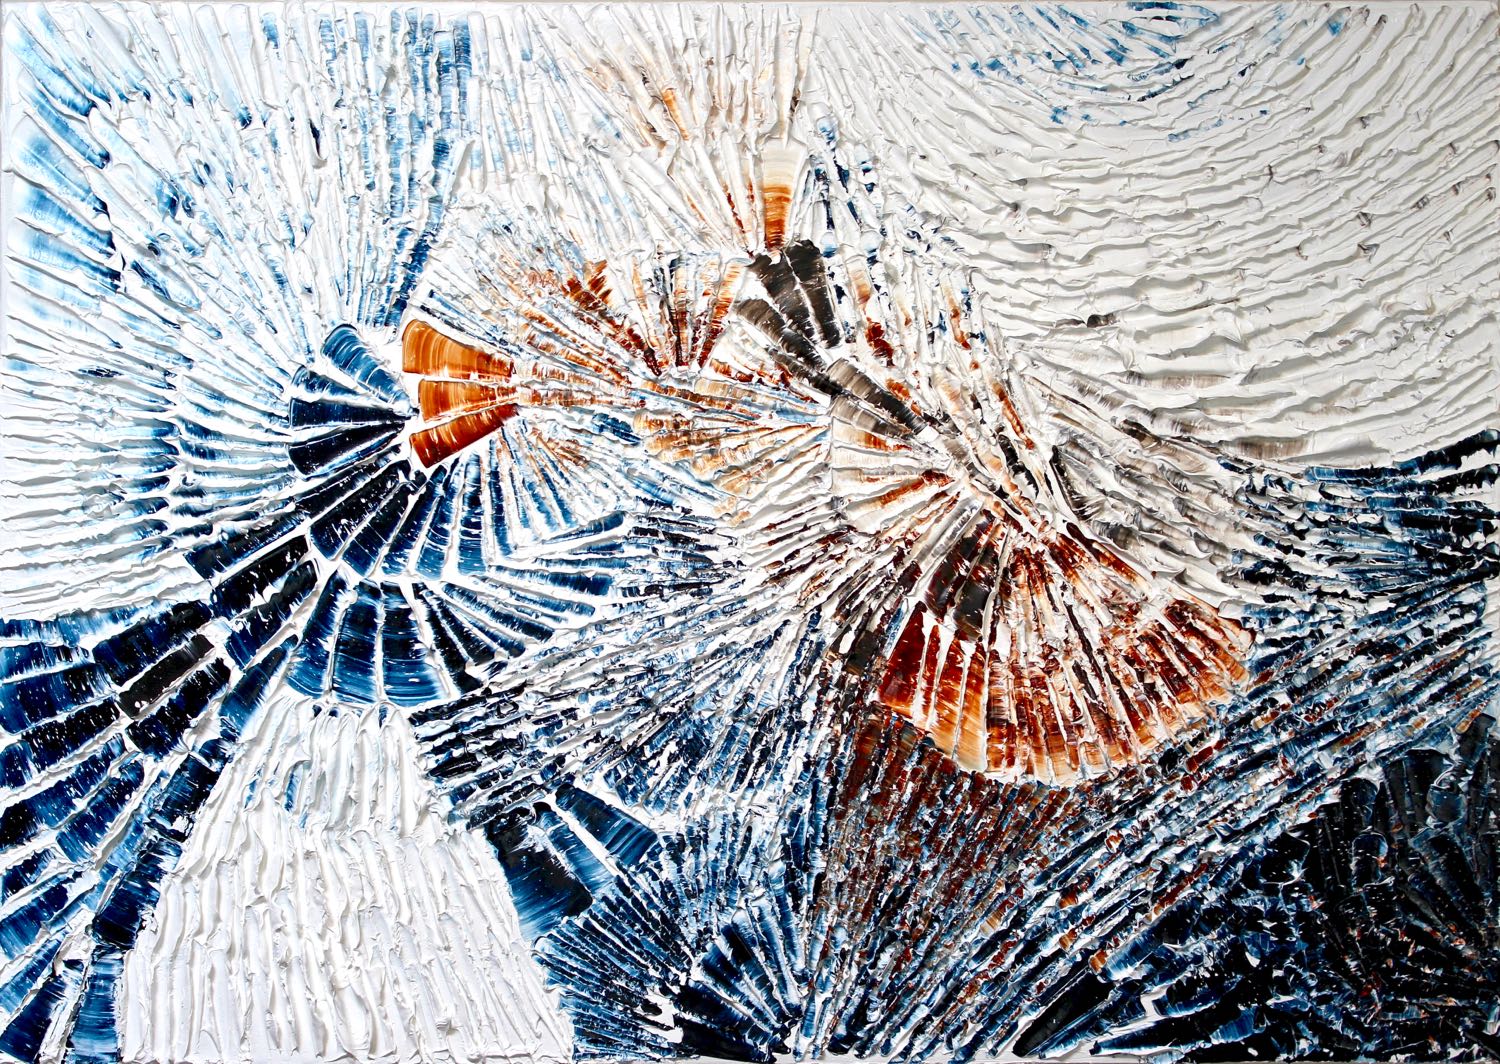 'Fire and Ice' - Louis-Bernard St-Jean, 2016, Walnut oil on linen, 34" x 48"